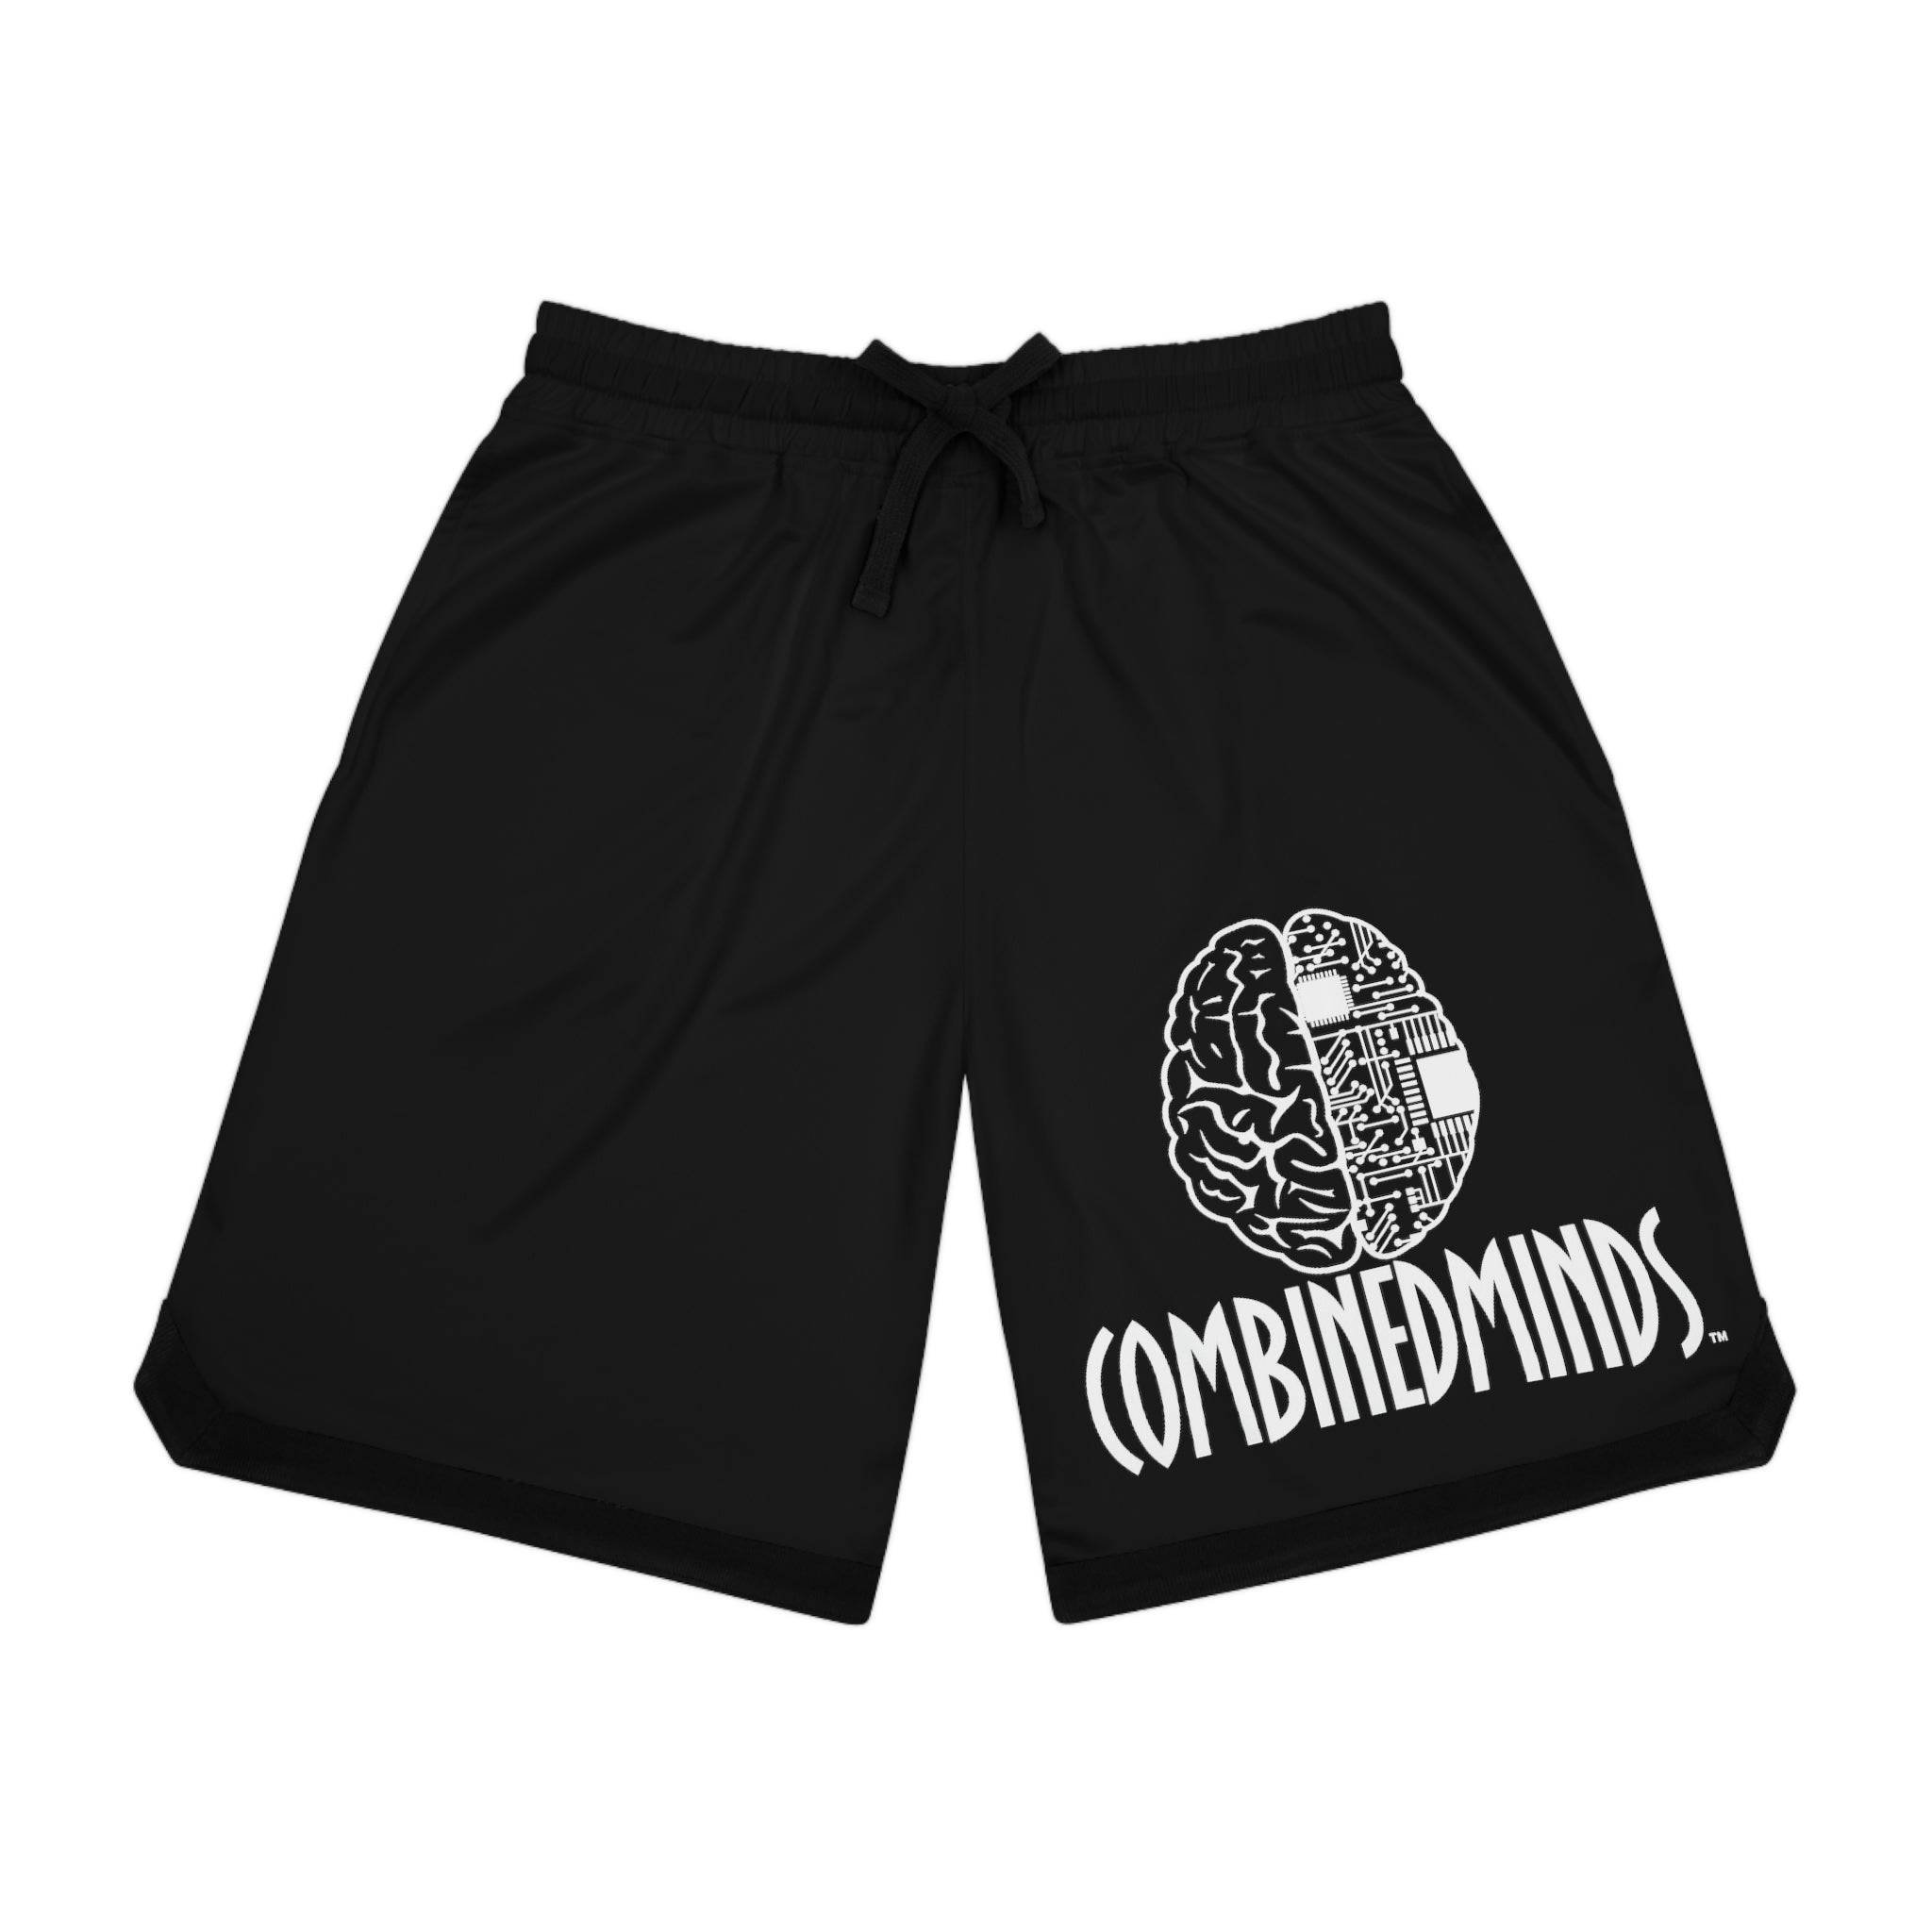 Combinedminds Basketball Shorts Black White Logo